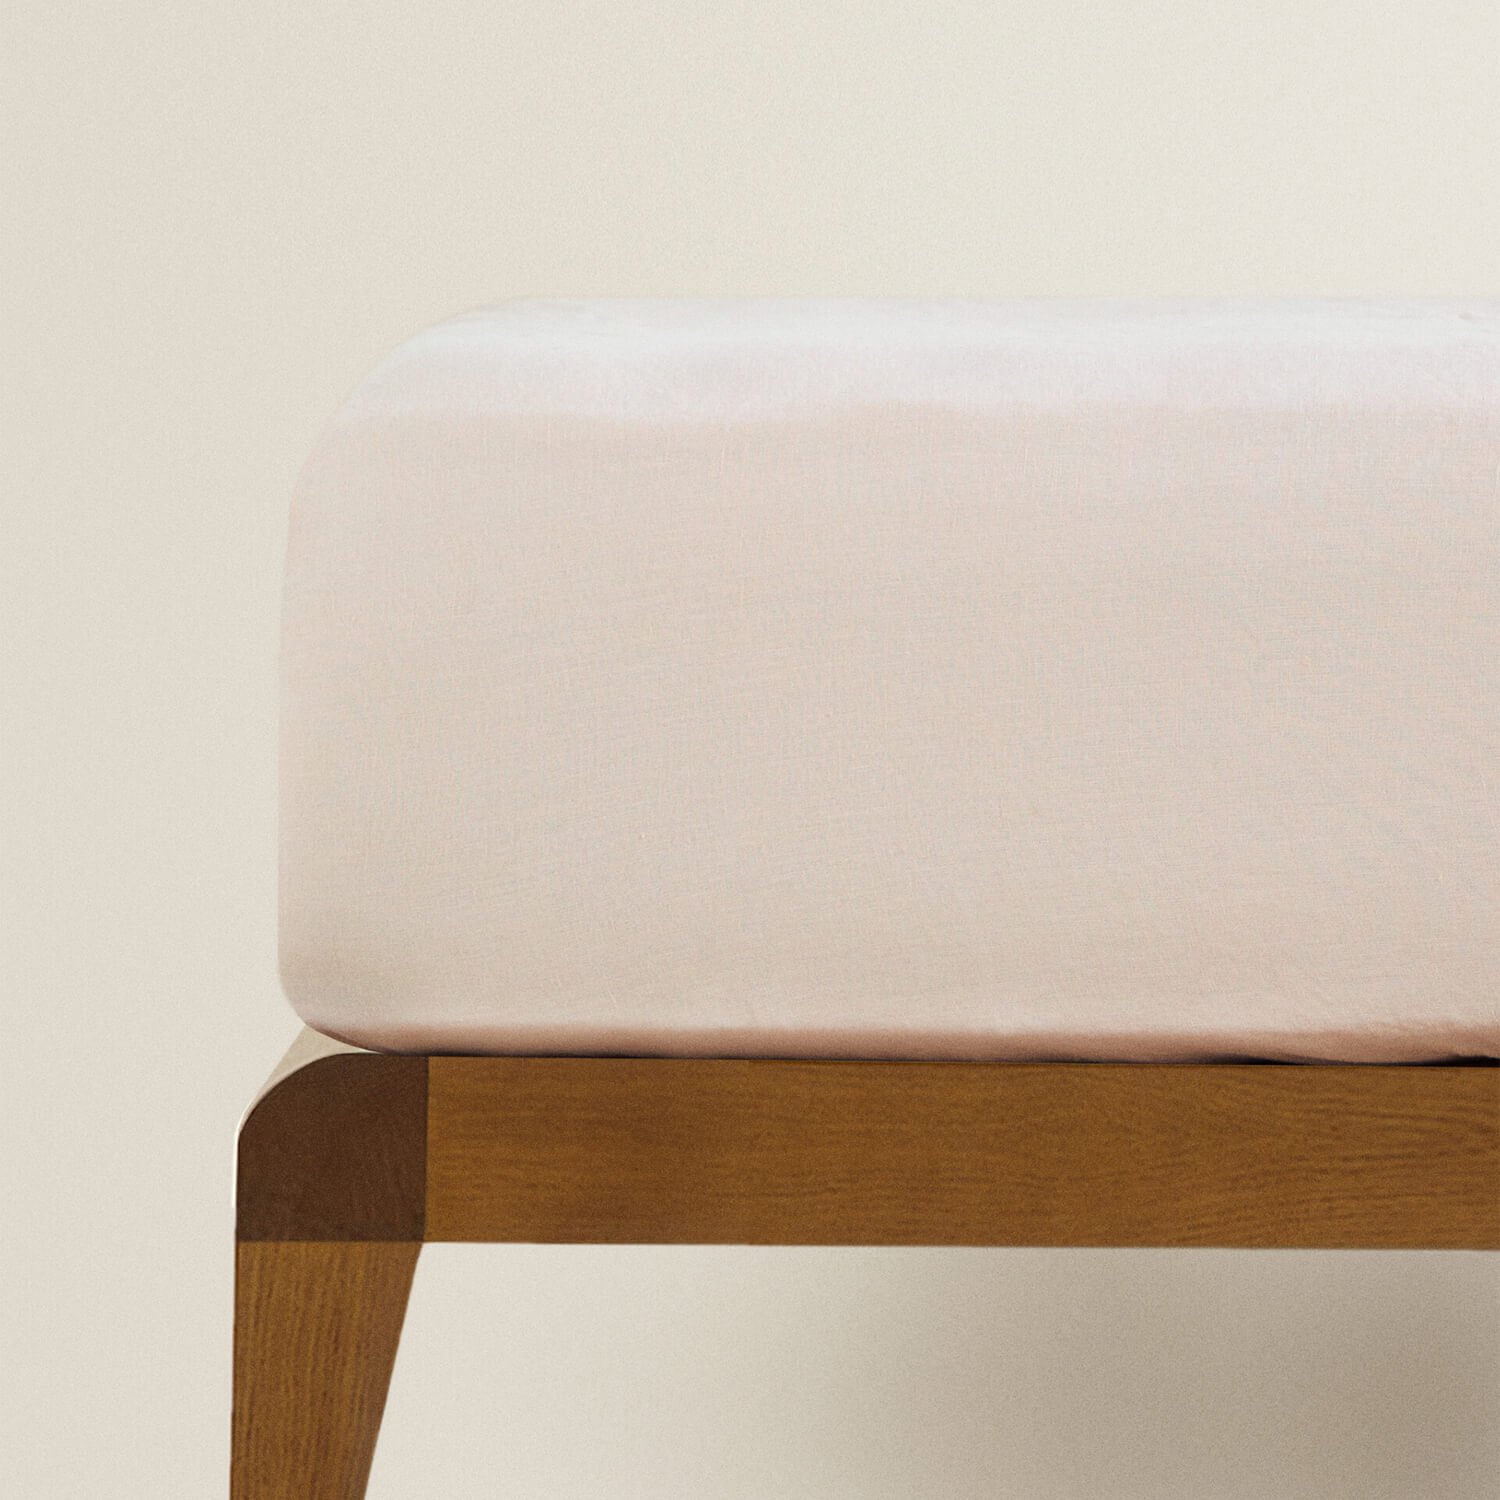 Простыня на резинке Zara Home Children’s Washed Linen, розовый простыня однотонная из 100 стираного хлопка scenario 150 x 250 см розовый